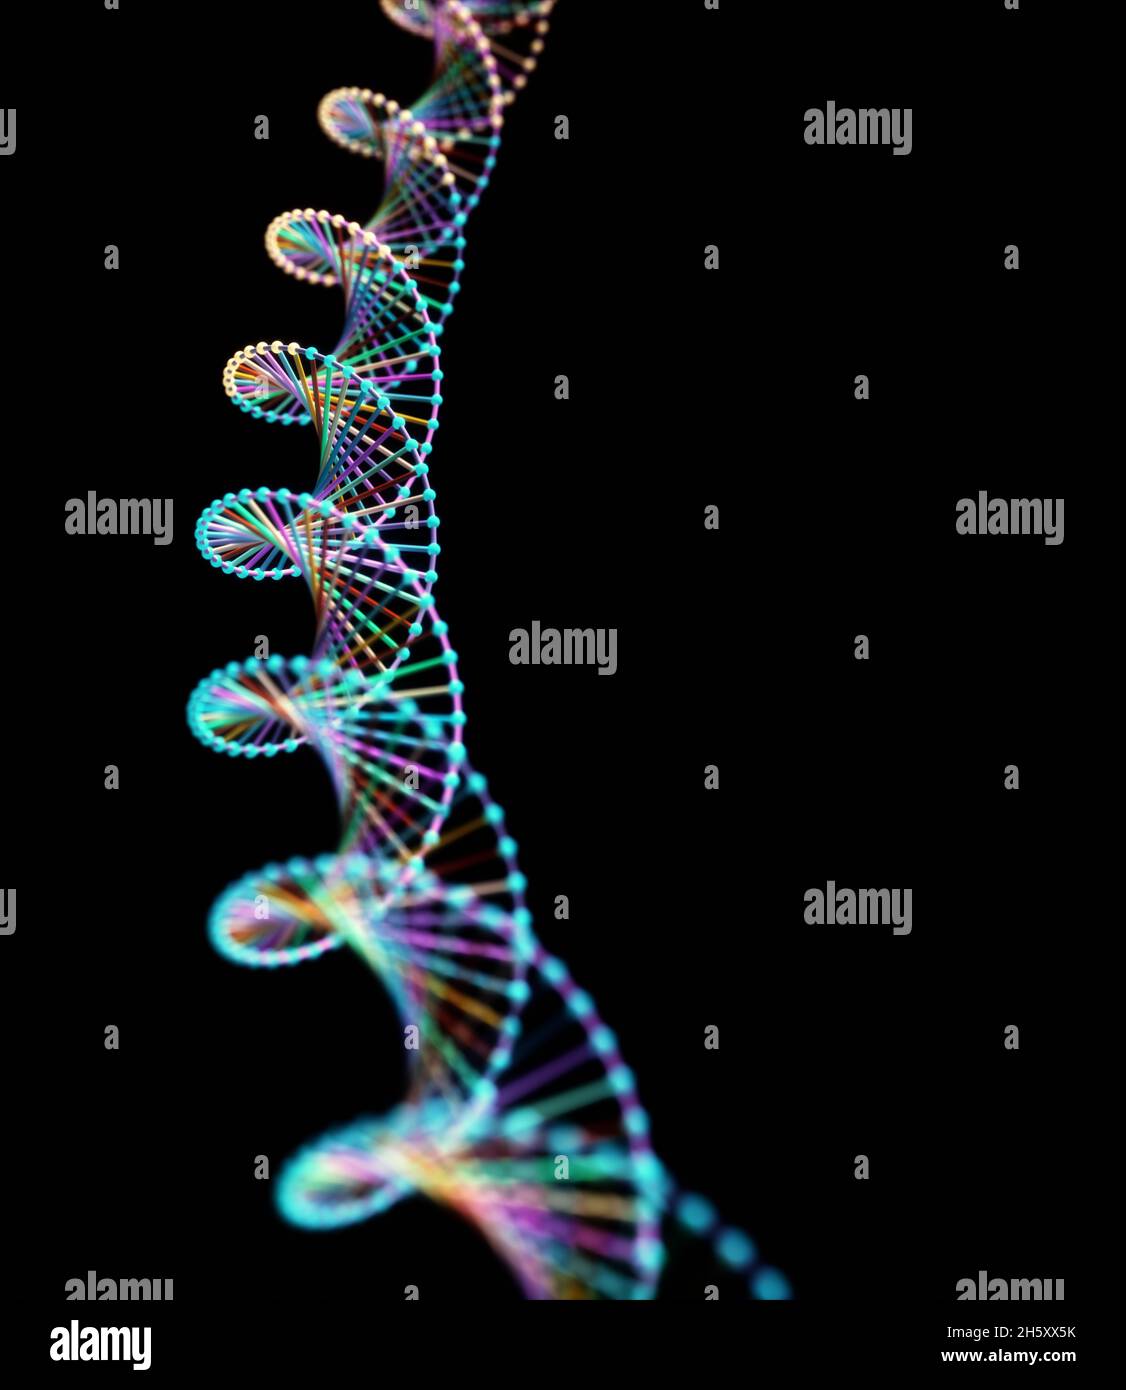 Imagen abstracta de los códigos genéticos ADN. Imagen conceptual para usar como fondo. Ilustración 3D. Foto de stock